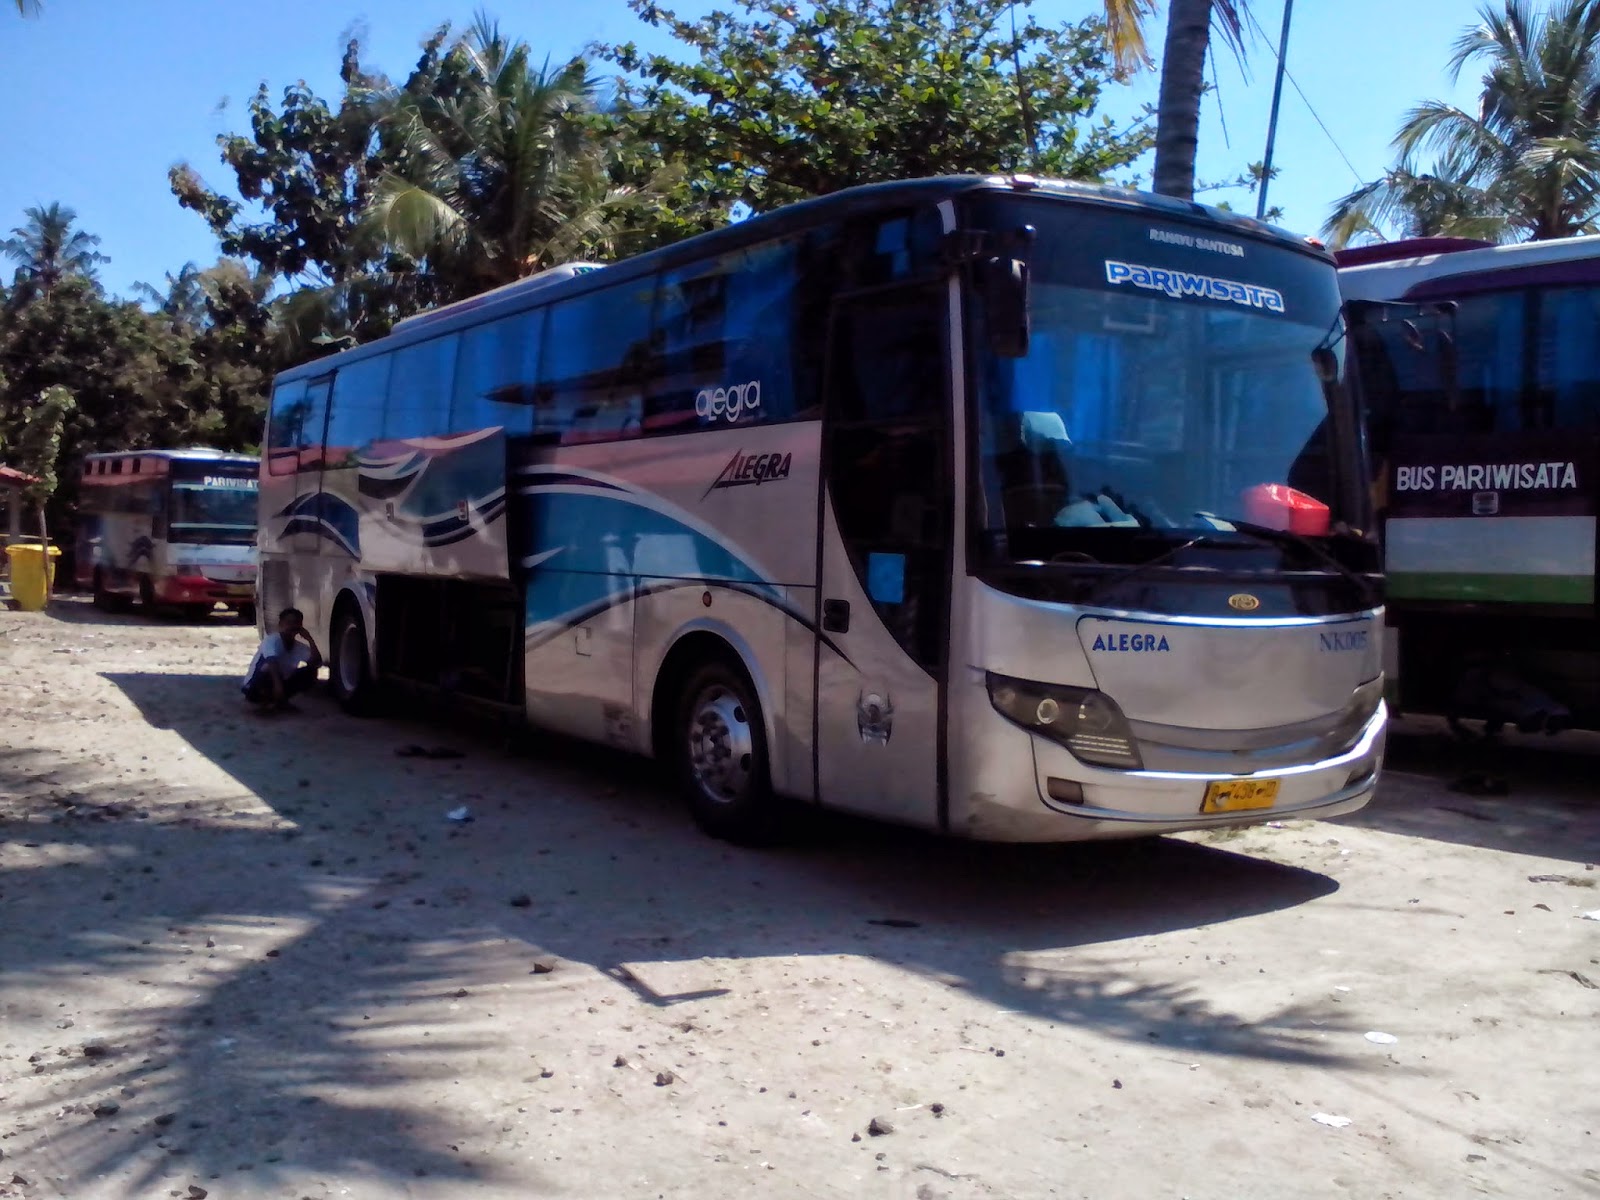 Garasibis PO Menggala Jawa Timur Bus Pariwisata